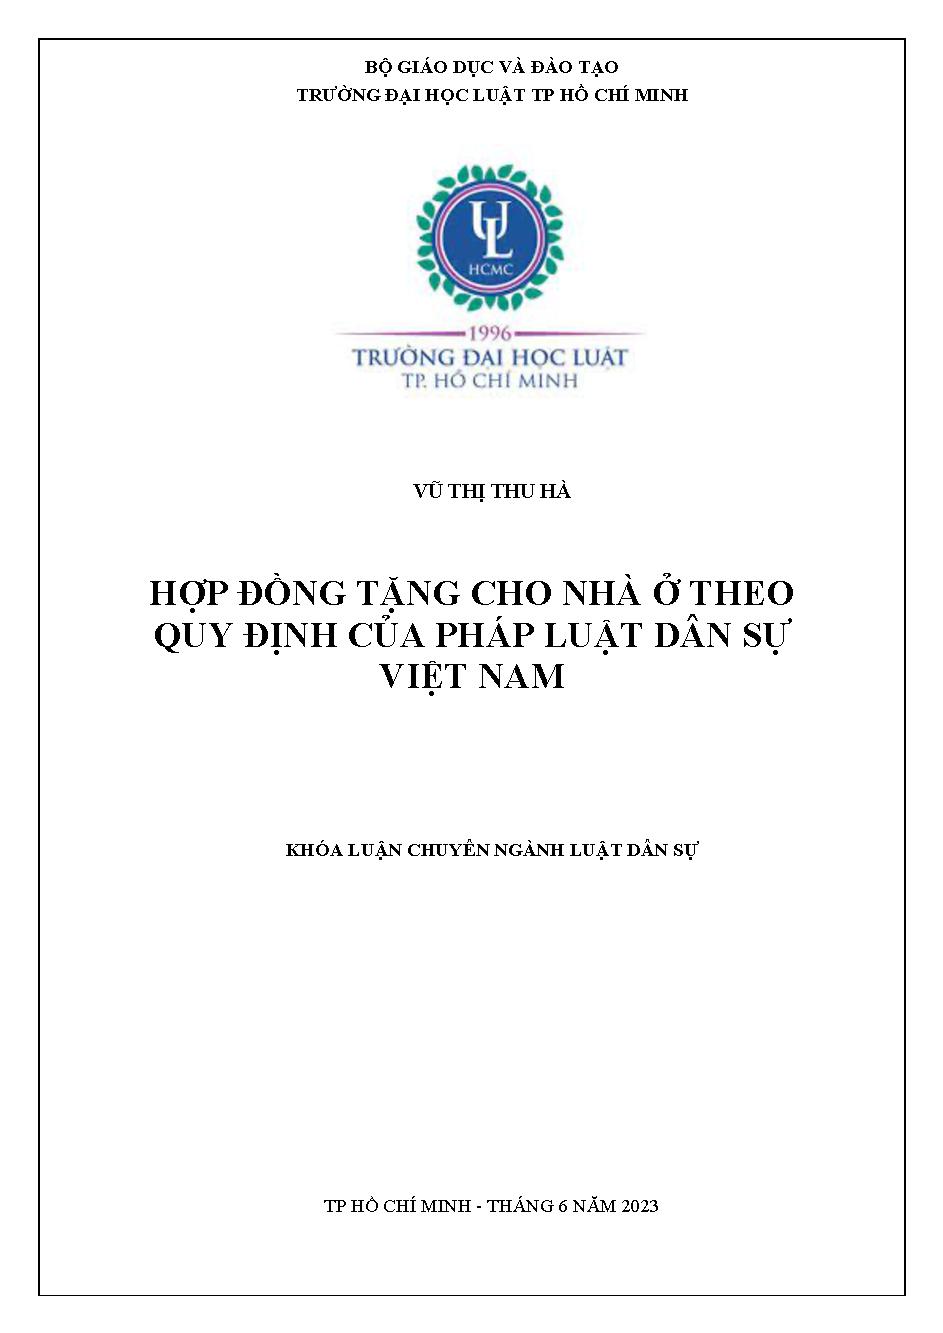 Hợp đồng tặng cho nhà ở theo quy định của pháp luật dân sự Việt Nam